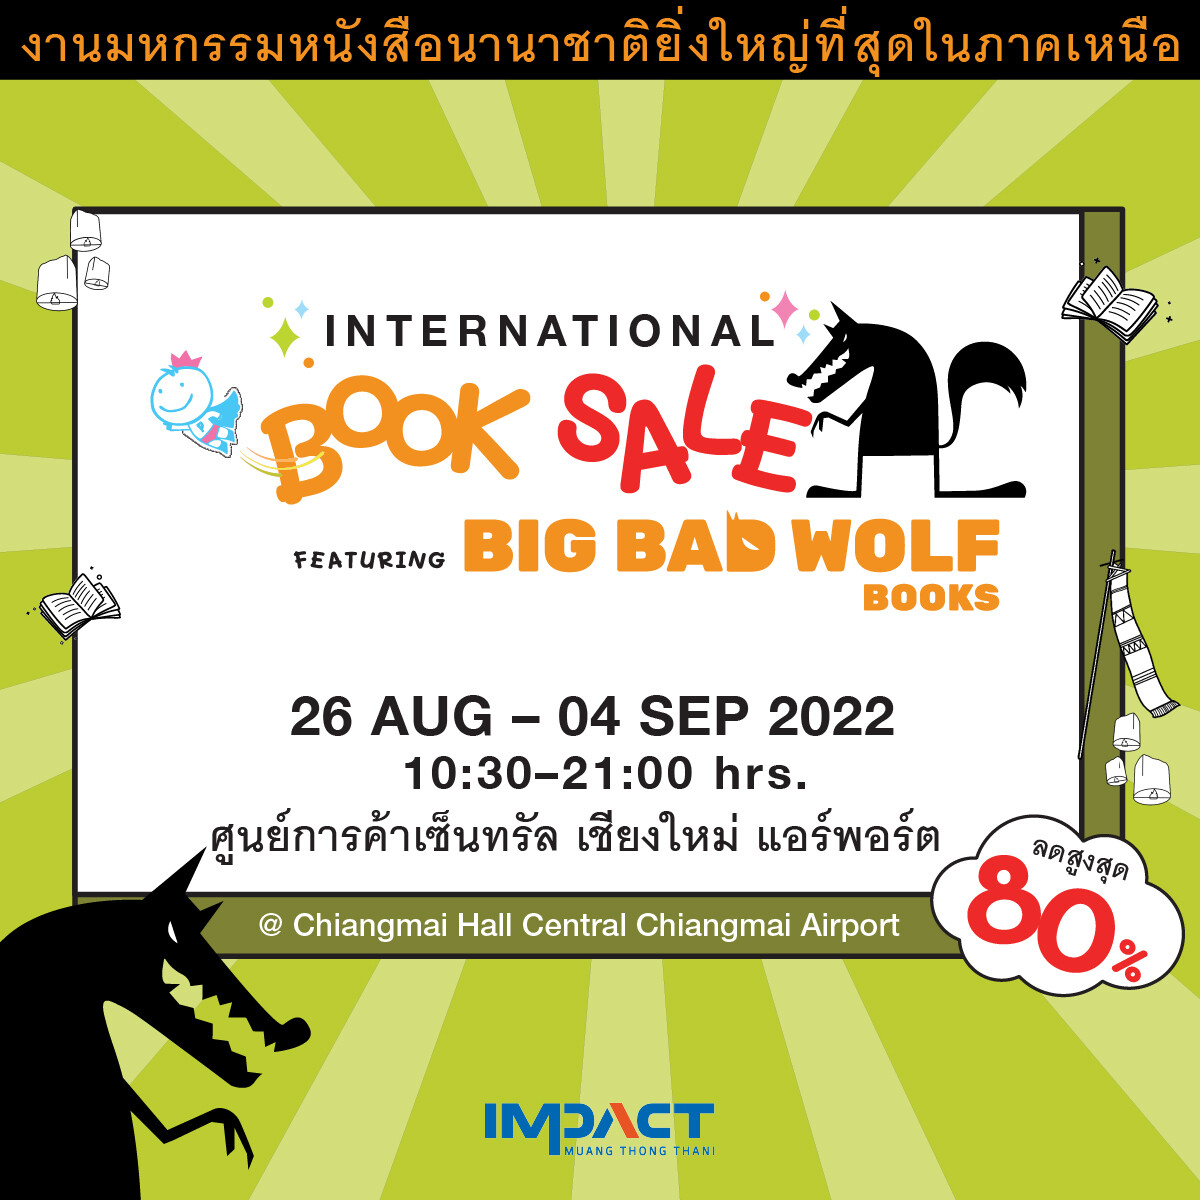 อิมแพ็ค ร่วมกับ บิ๊ก แบ๊ด วูฟ ผนึกกำลังพันธมิตรธุรกิจ จัดงานมหกรรมหนังสือยิ่งใหญ่ที่สุดในล้านนา International Book Sale featuring Big Bad Wolf Books